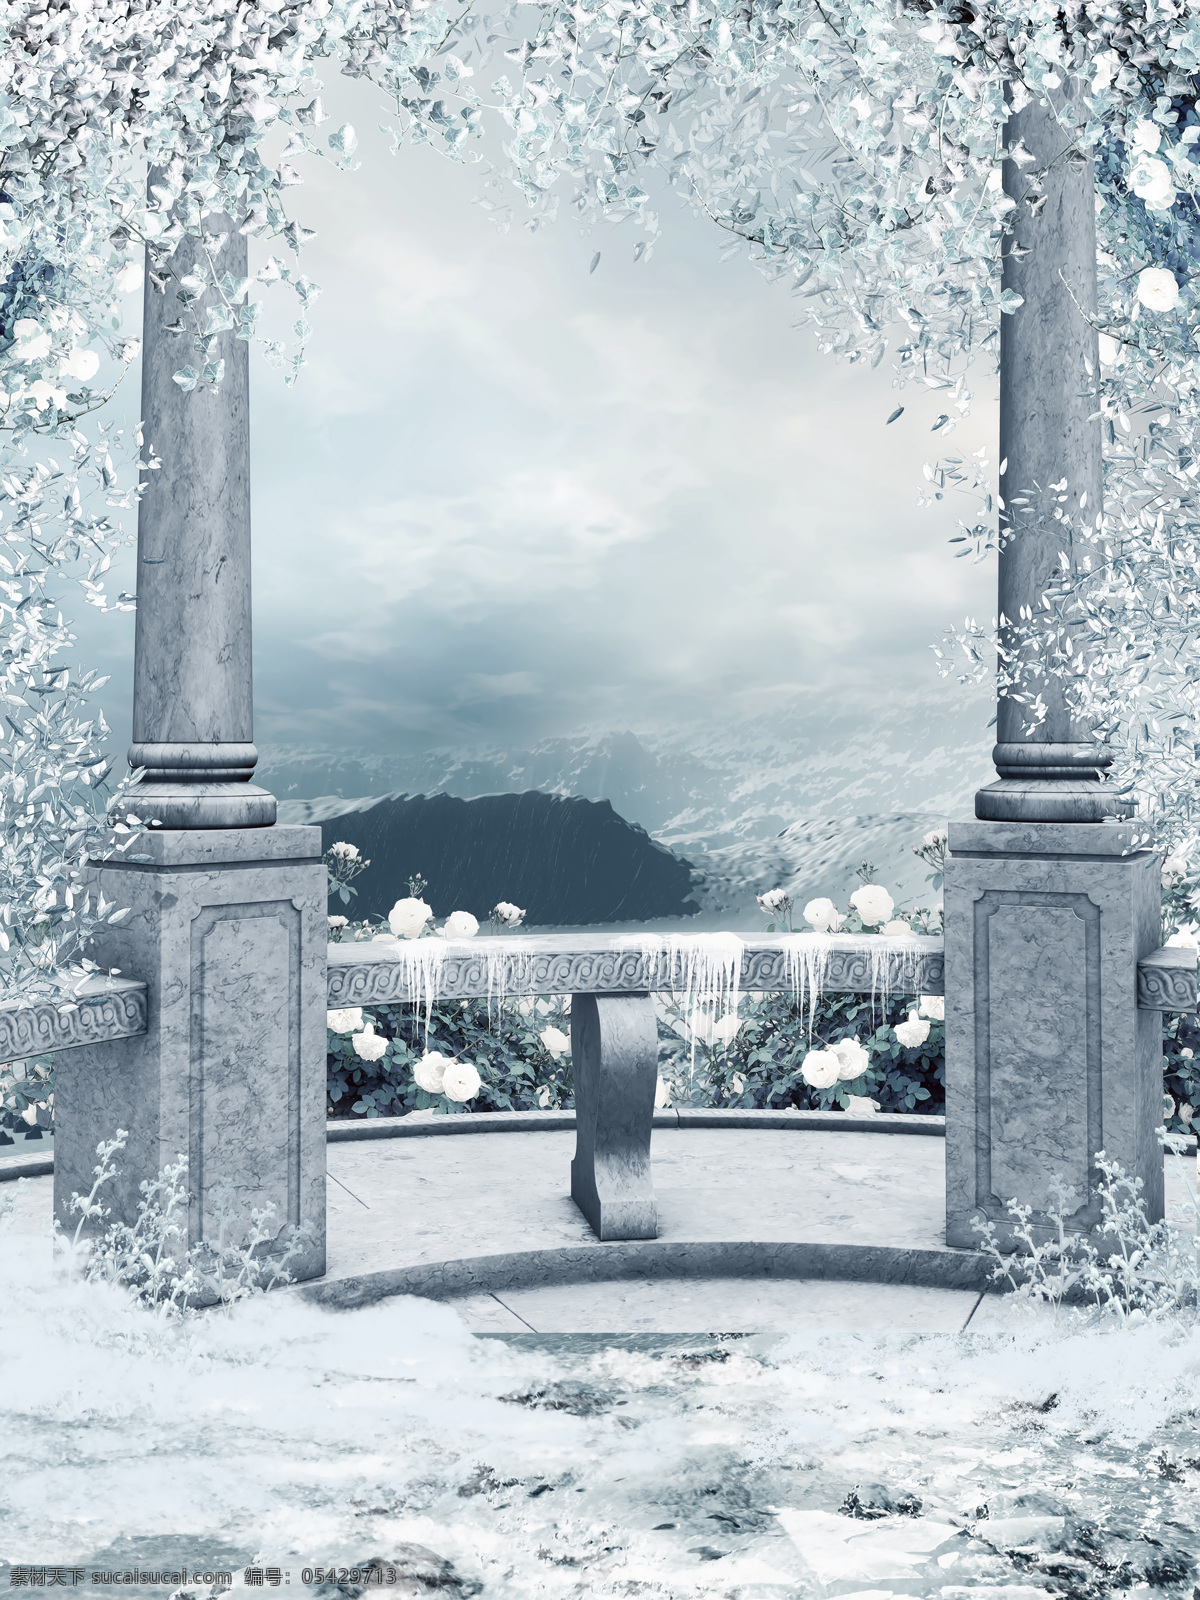 美丽 冬天 风景 凉亭风景 石柱子 冬天风景 美丽风景 其他类别 环境家居